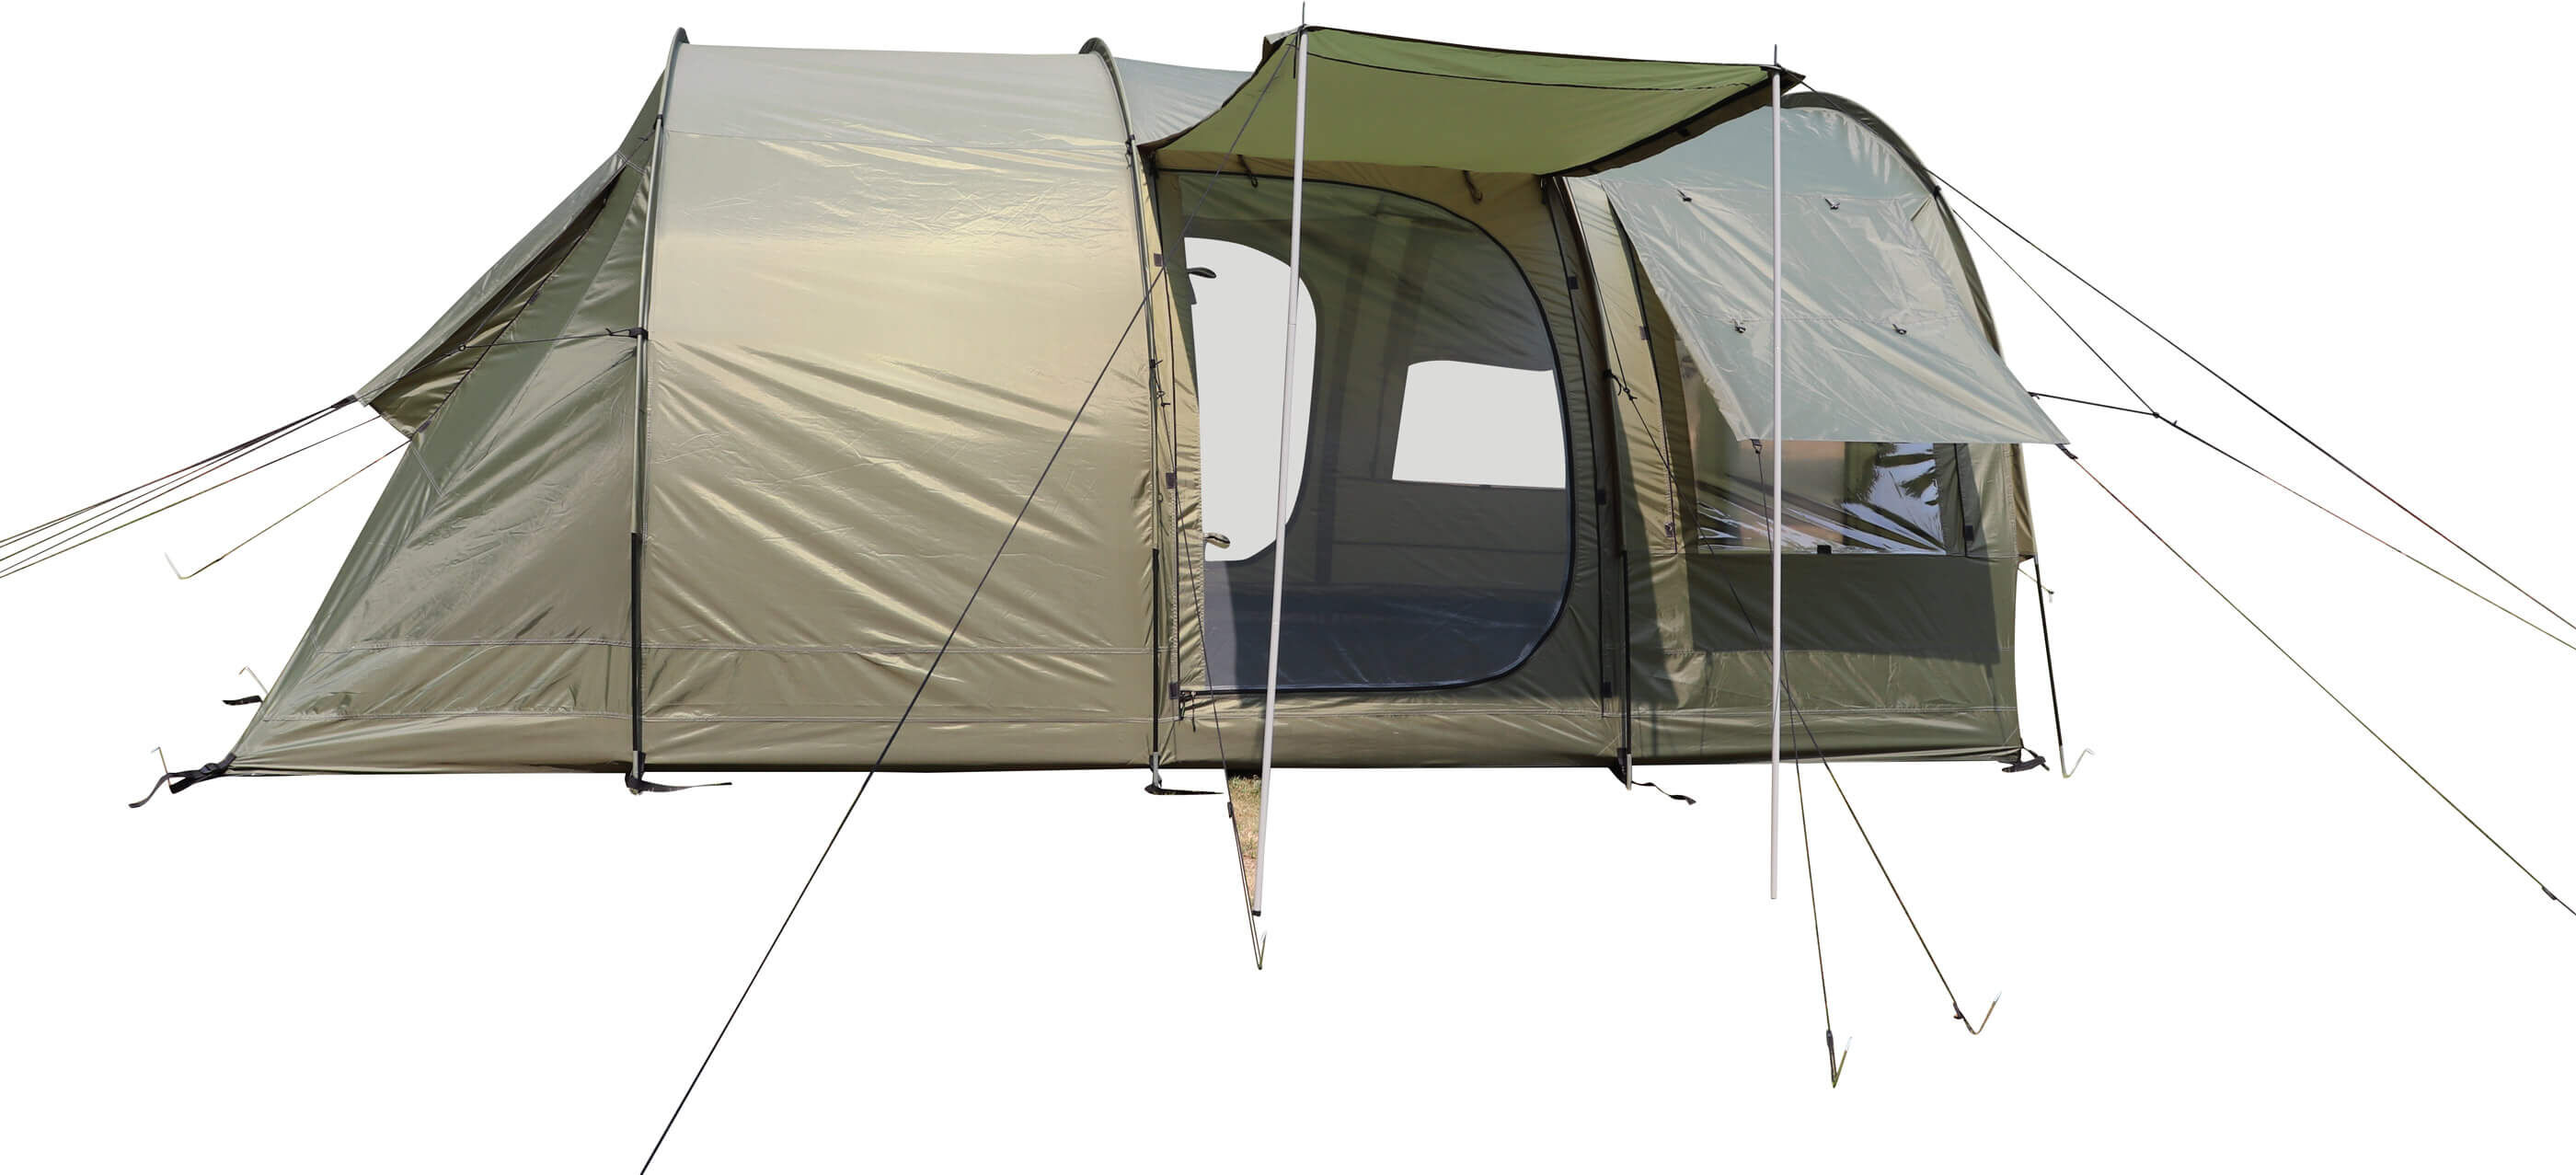 Das Campingzelt besitzt einen fest eingenähten Zeltboden fest eingenähte Fliegengitter an allen Türen.